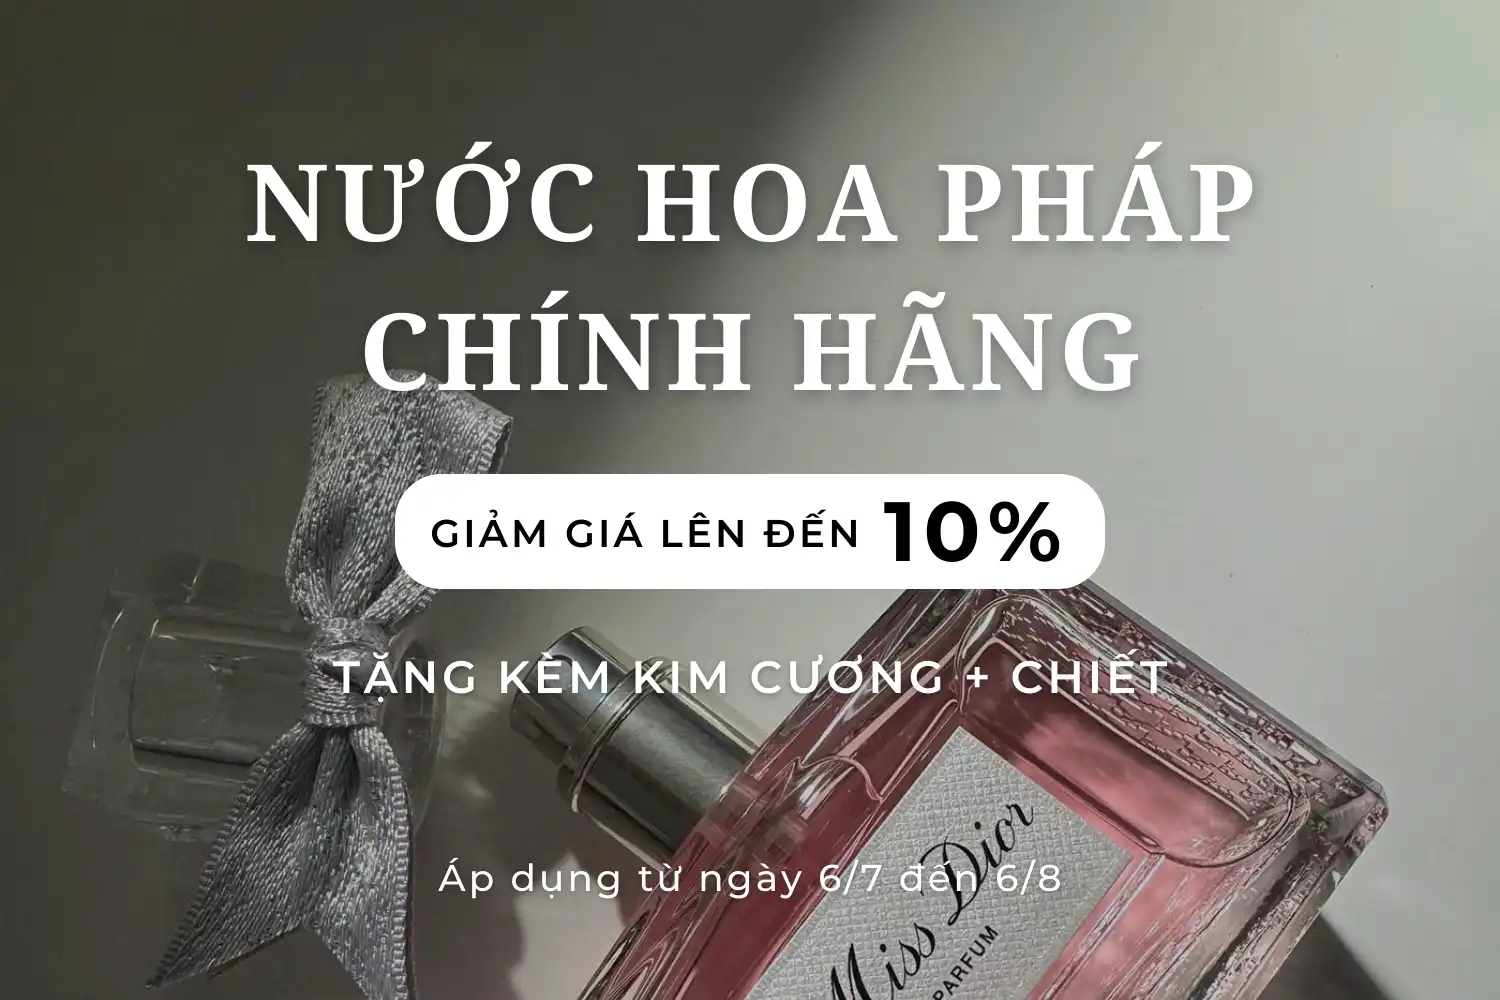 Giảm Giá Lên Đến 10% Cho Toàn Bộ Sản Phẩm Tại MC Perfume